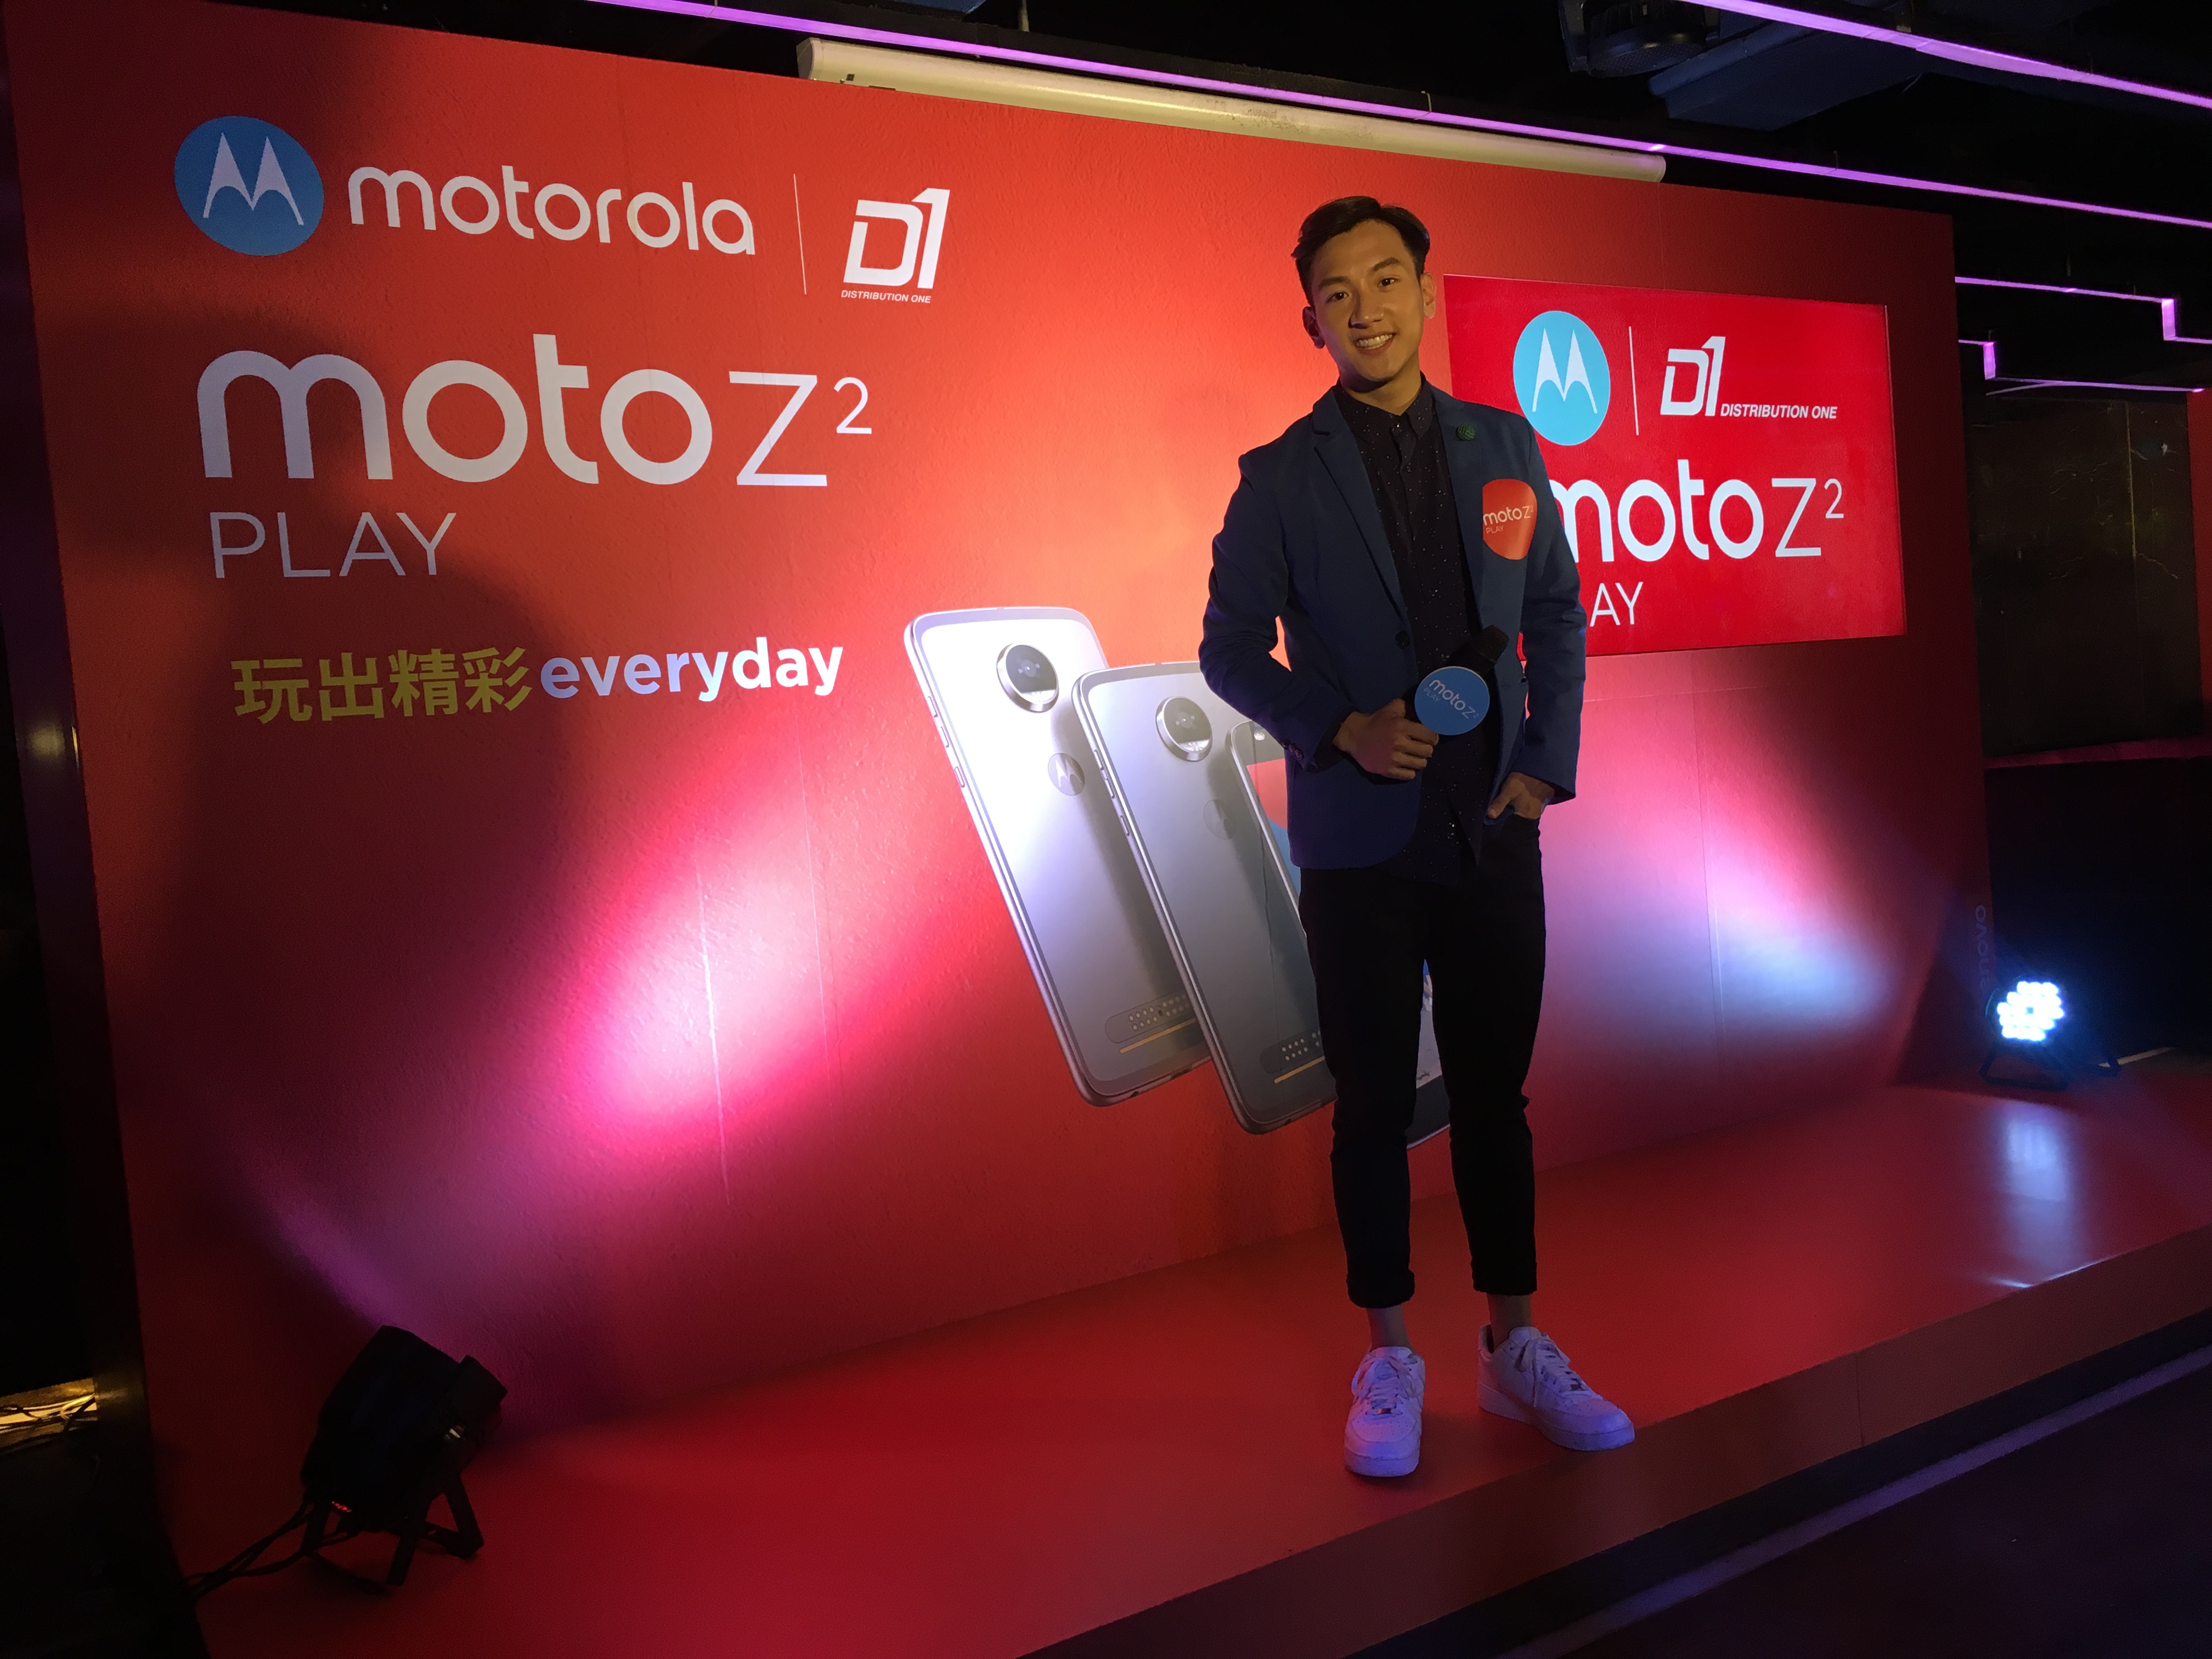 周啓陽 Elvis Chao司儀工作紀錄: 雙語司儀_Moto Z2 Play 香港發佈會